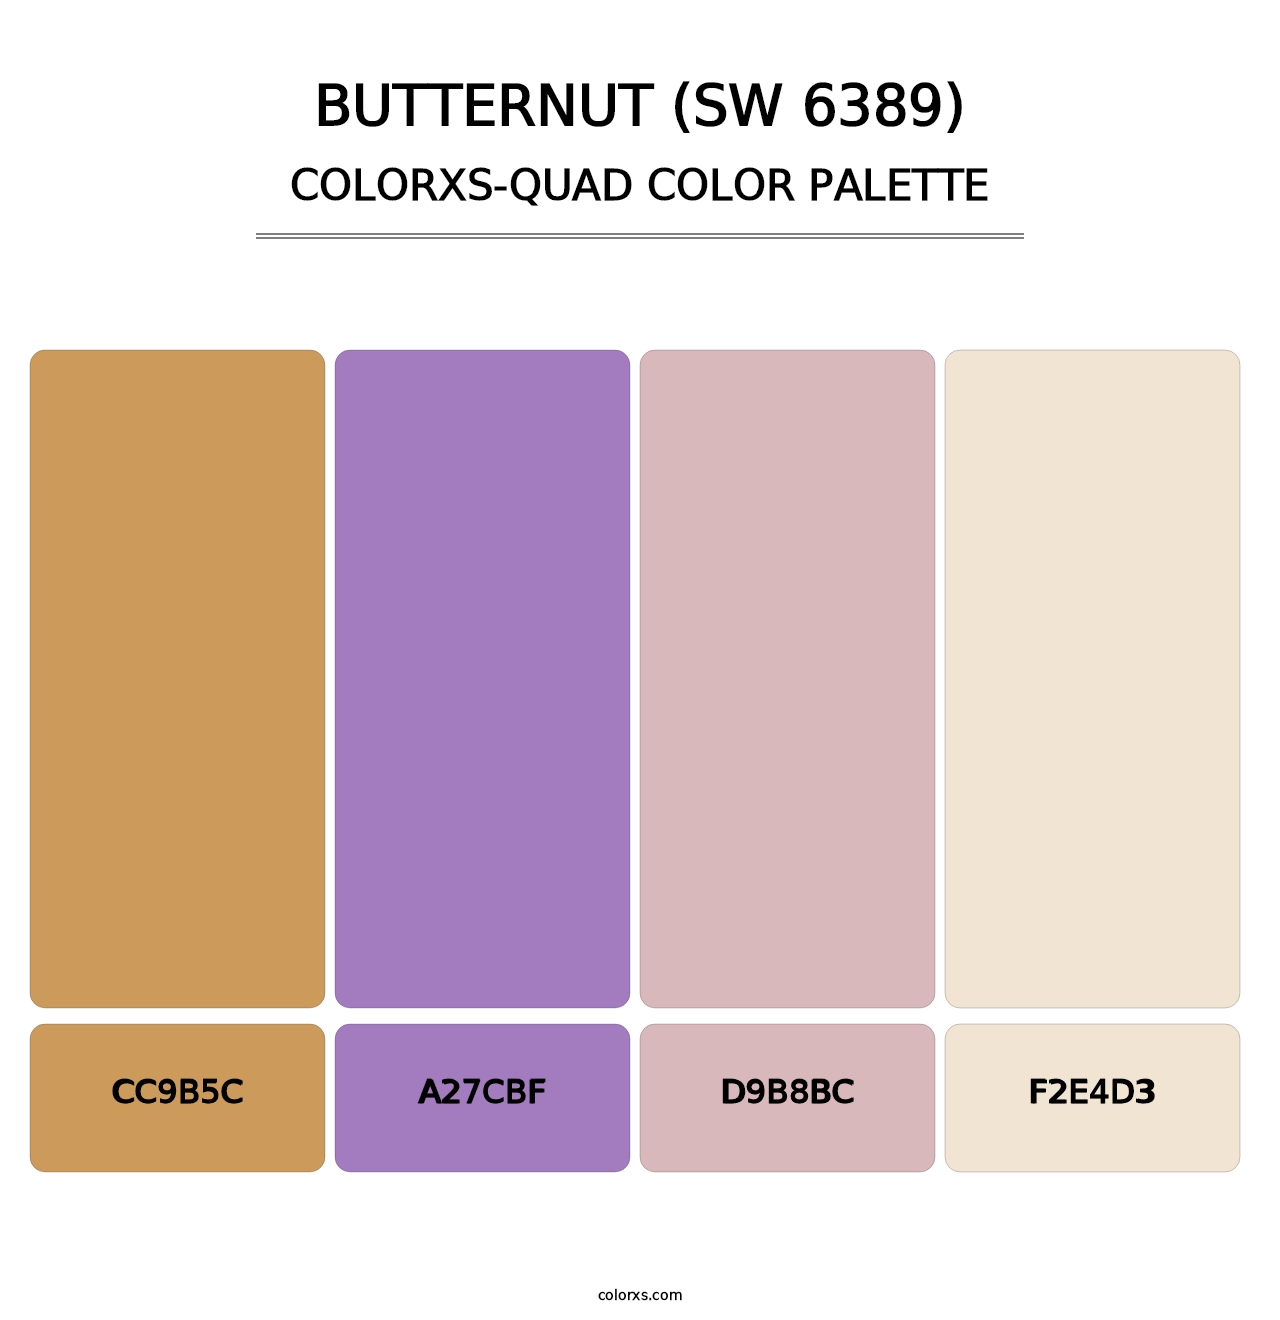 Butternut (SW 6389) - Colorxs Quad Palette